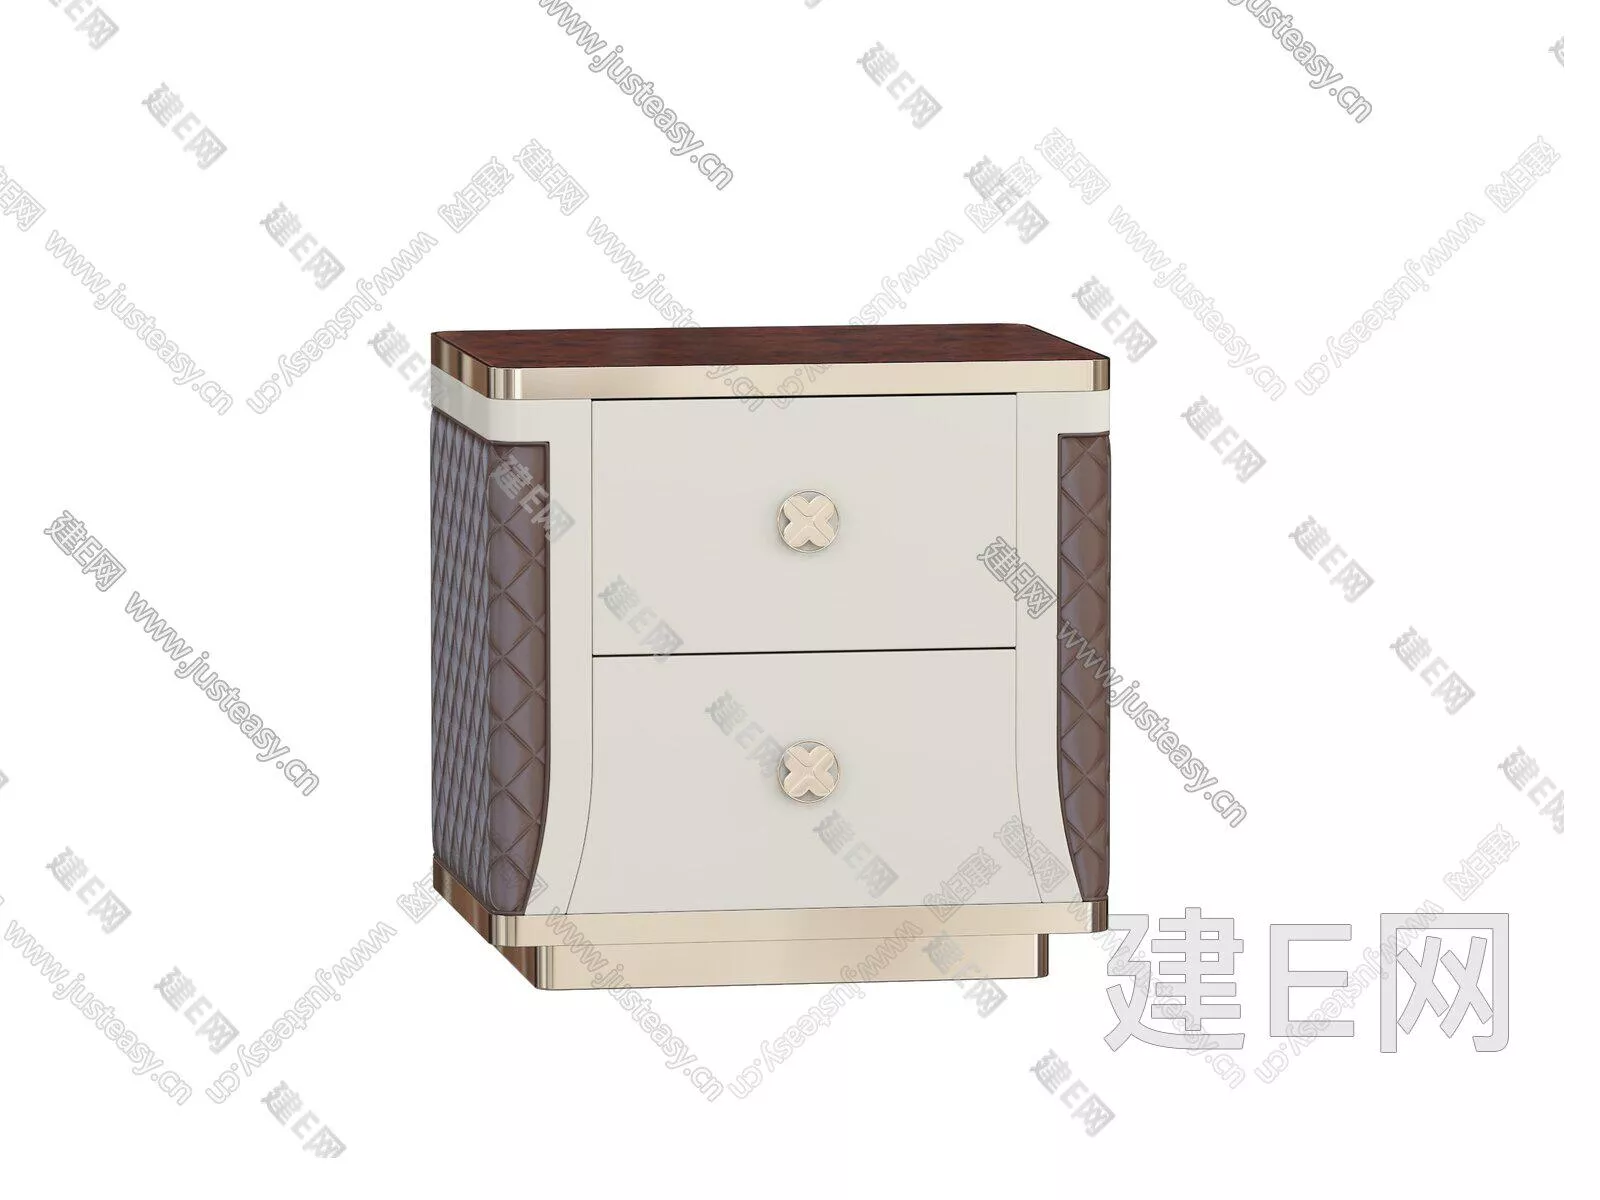 MODERN BEDSIDE TABLE - SKETCHUP 3D MODEL - ENSCAPE - 104941658